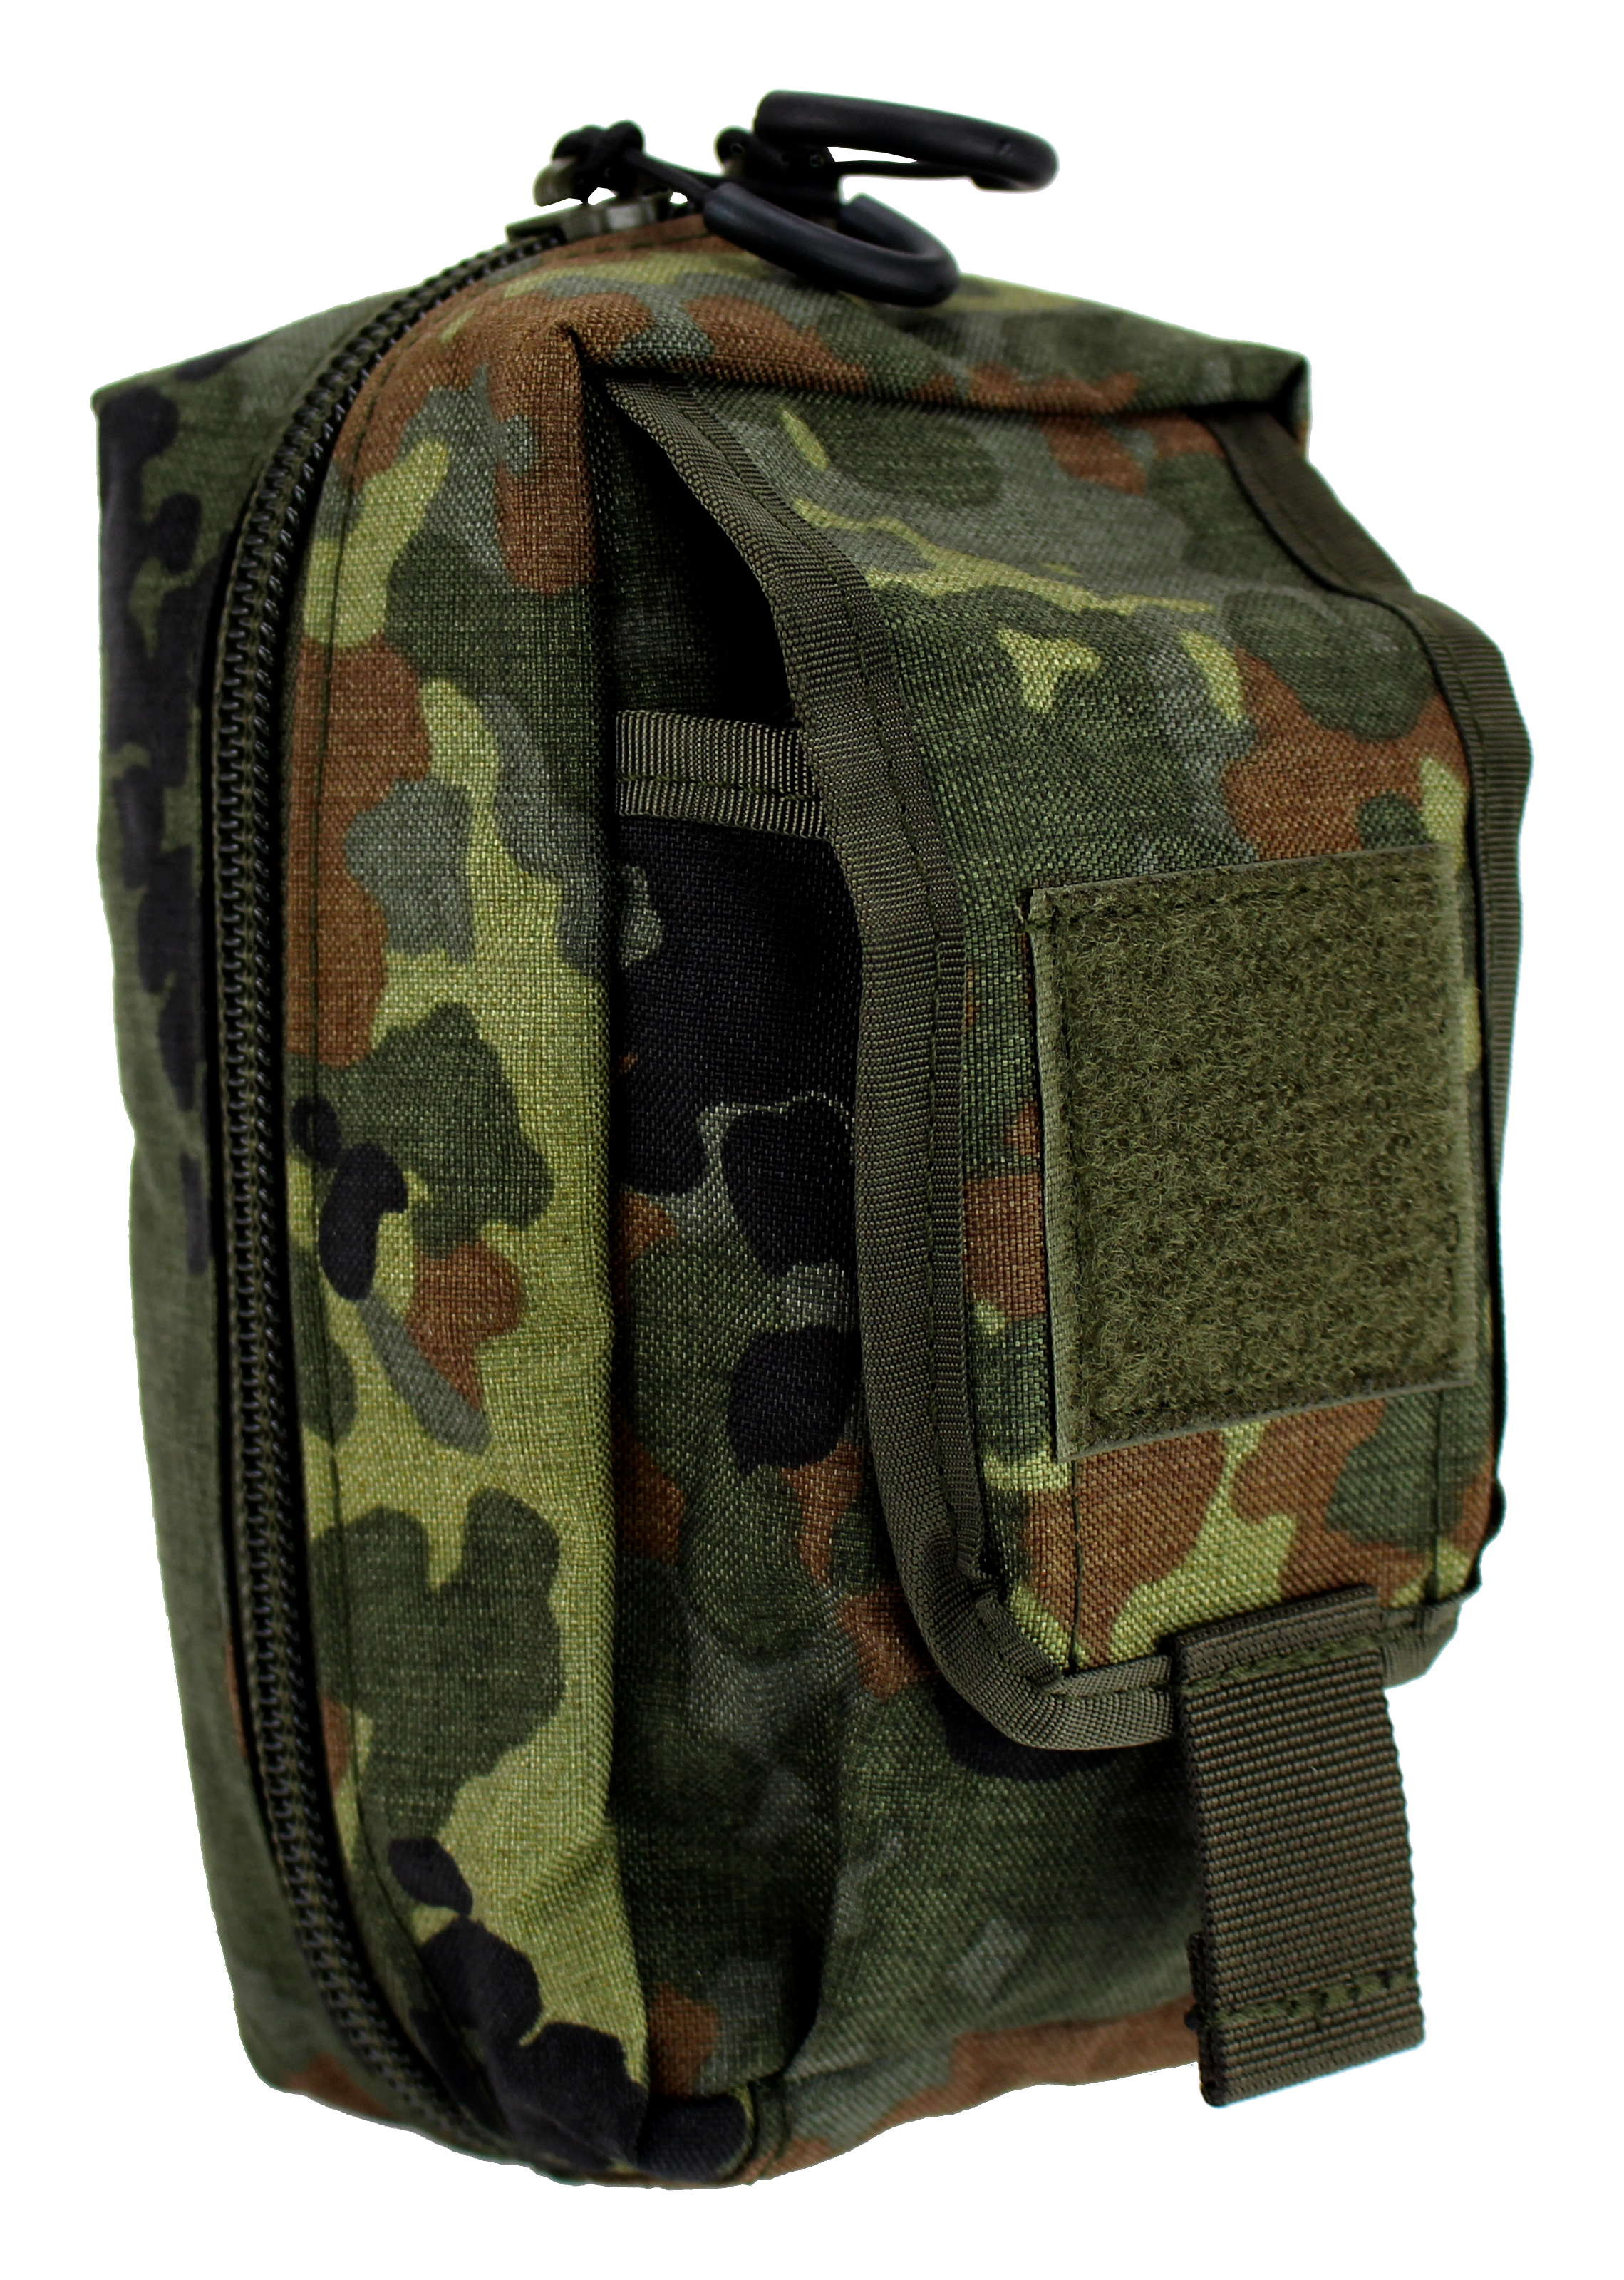 IFAK Medic bag for the belt / belt with interior organization